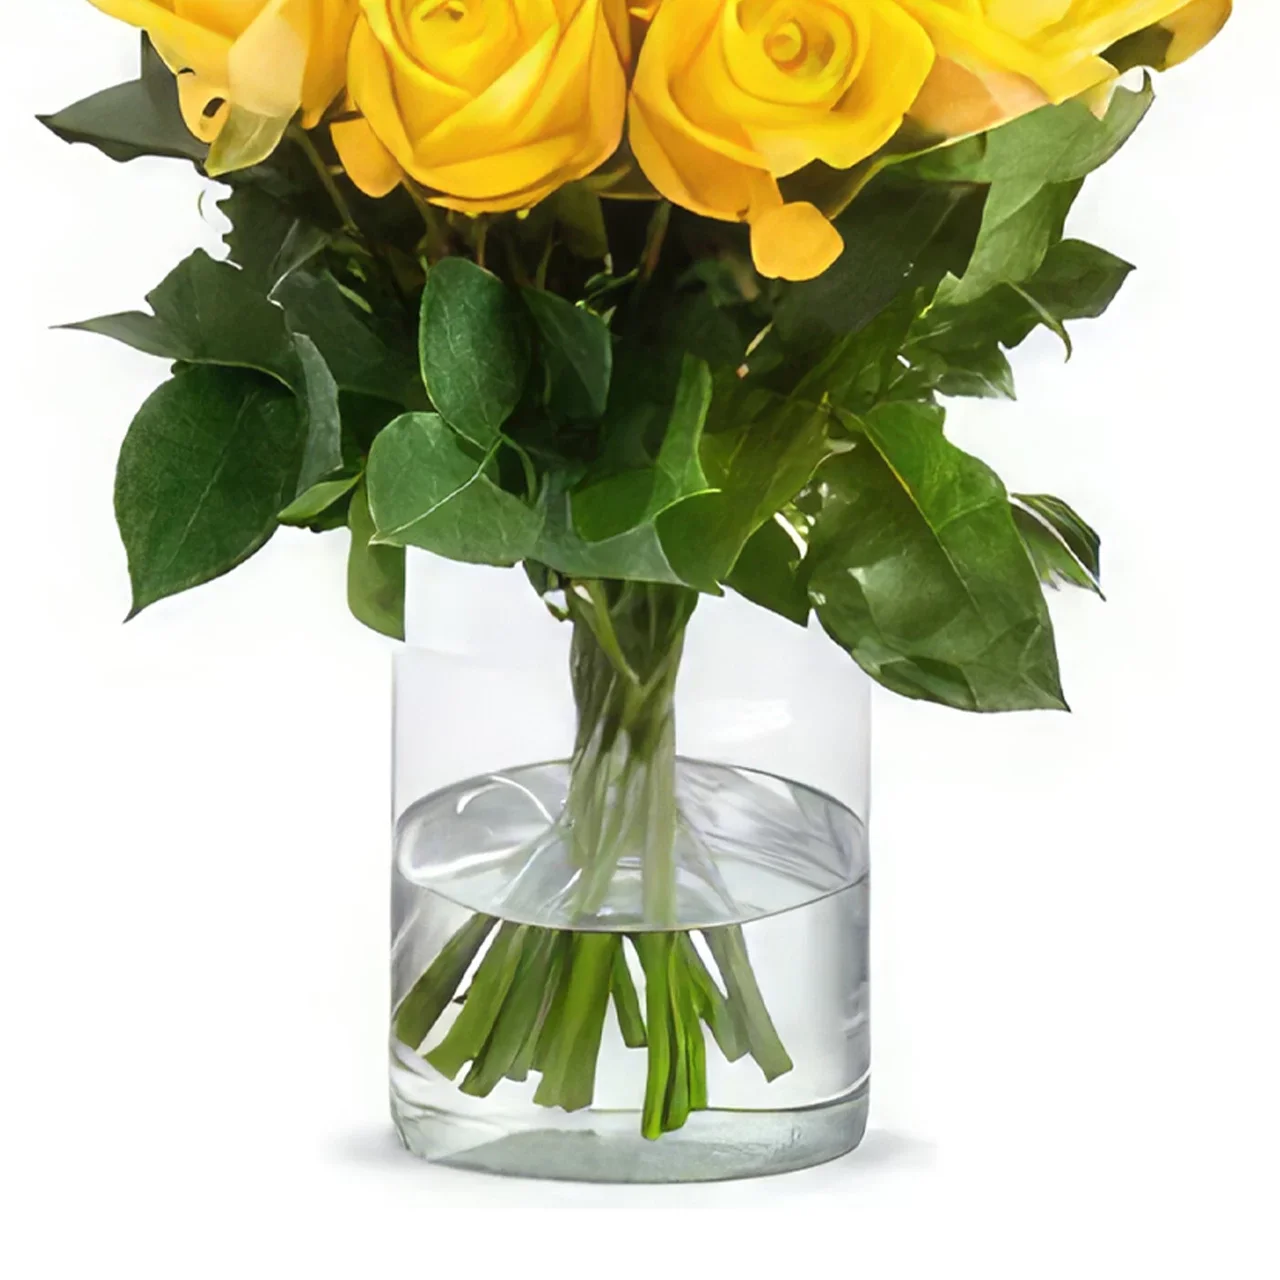 Groningen blomster- Buket gule roser Blomst buket/Arrangement